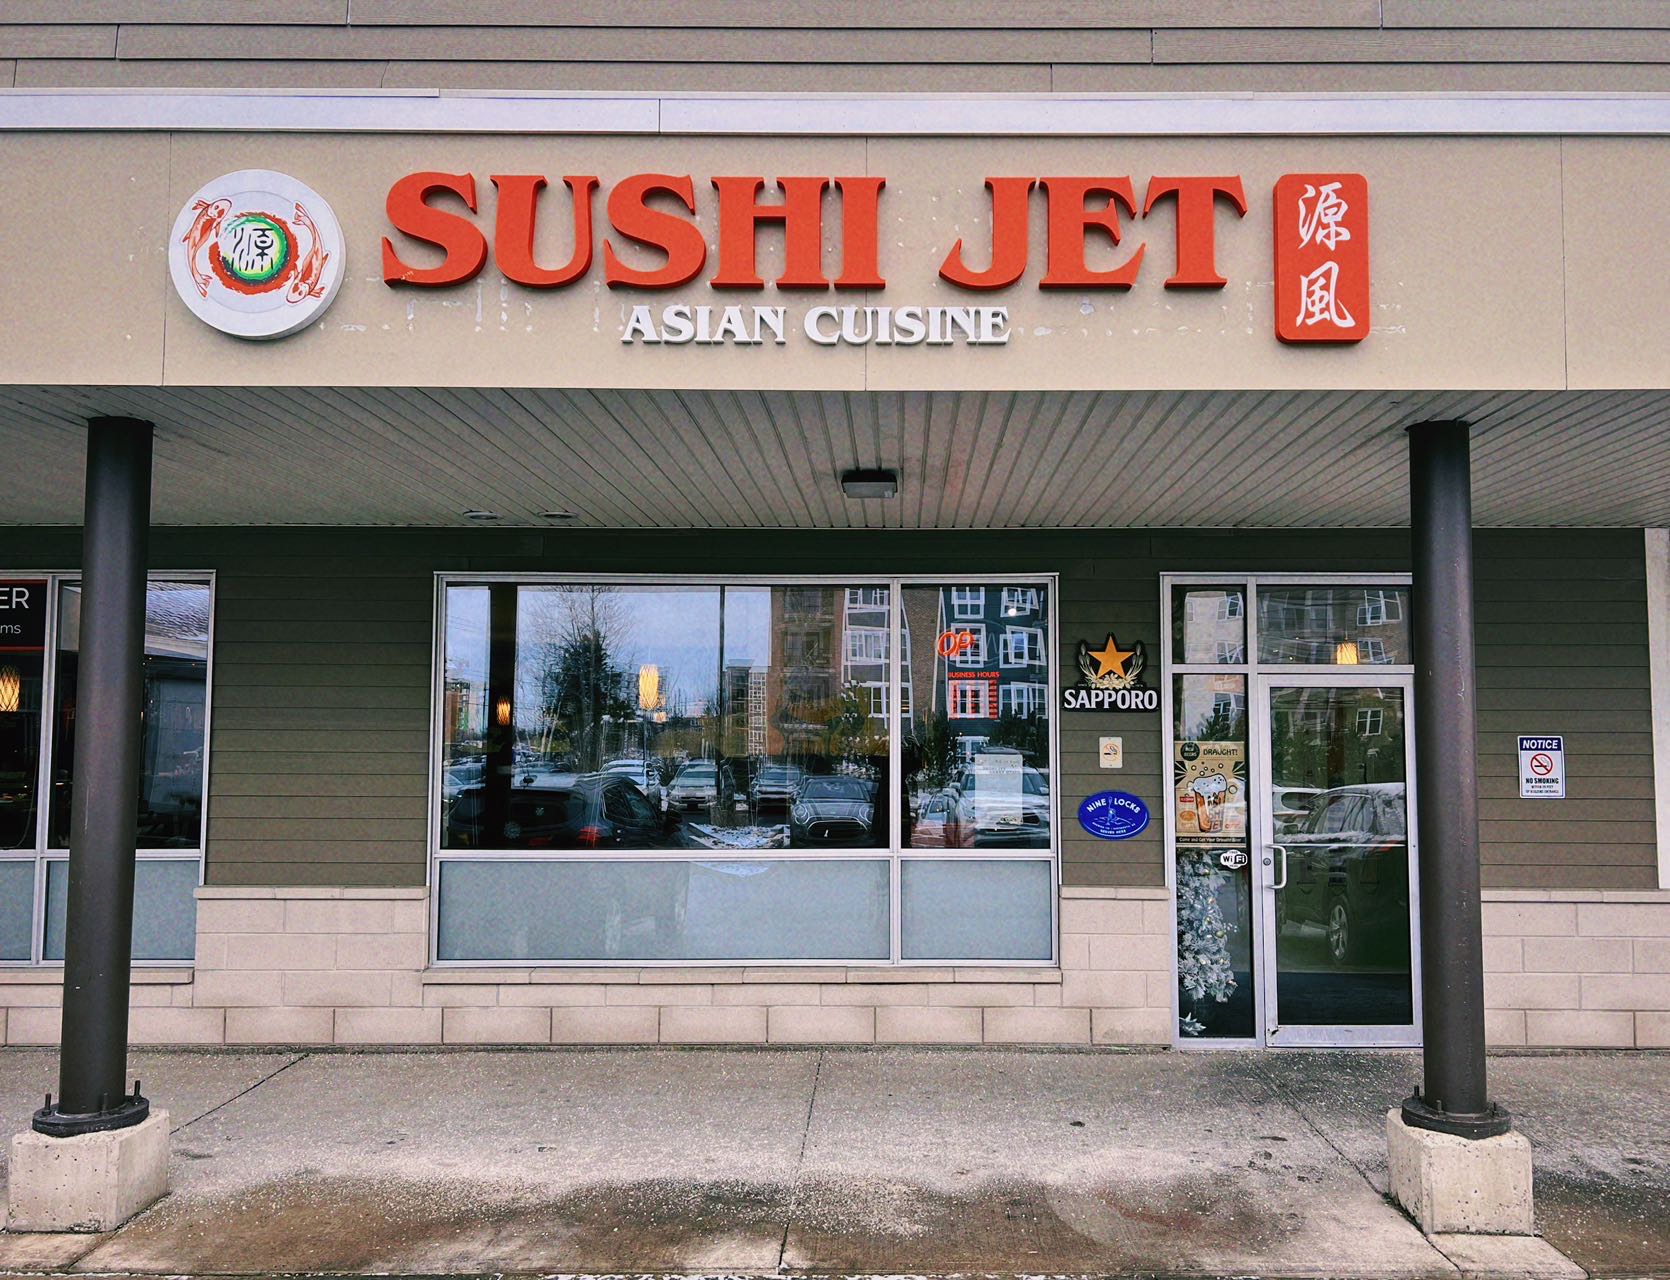 Sushi Jet (Larry Uteck)